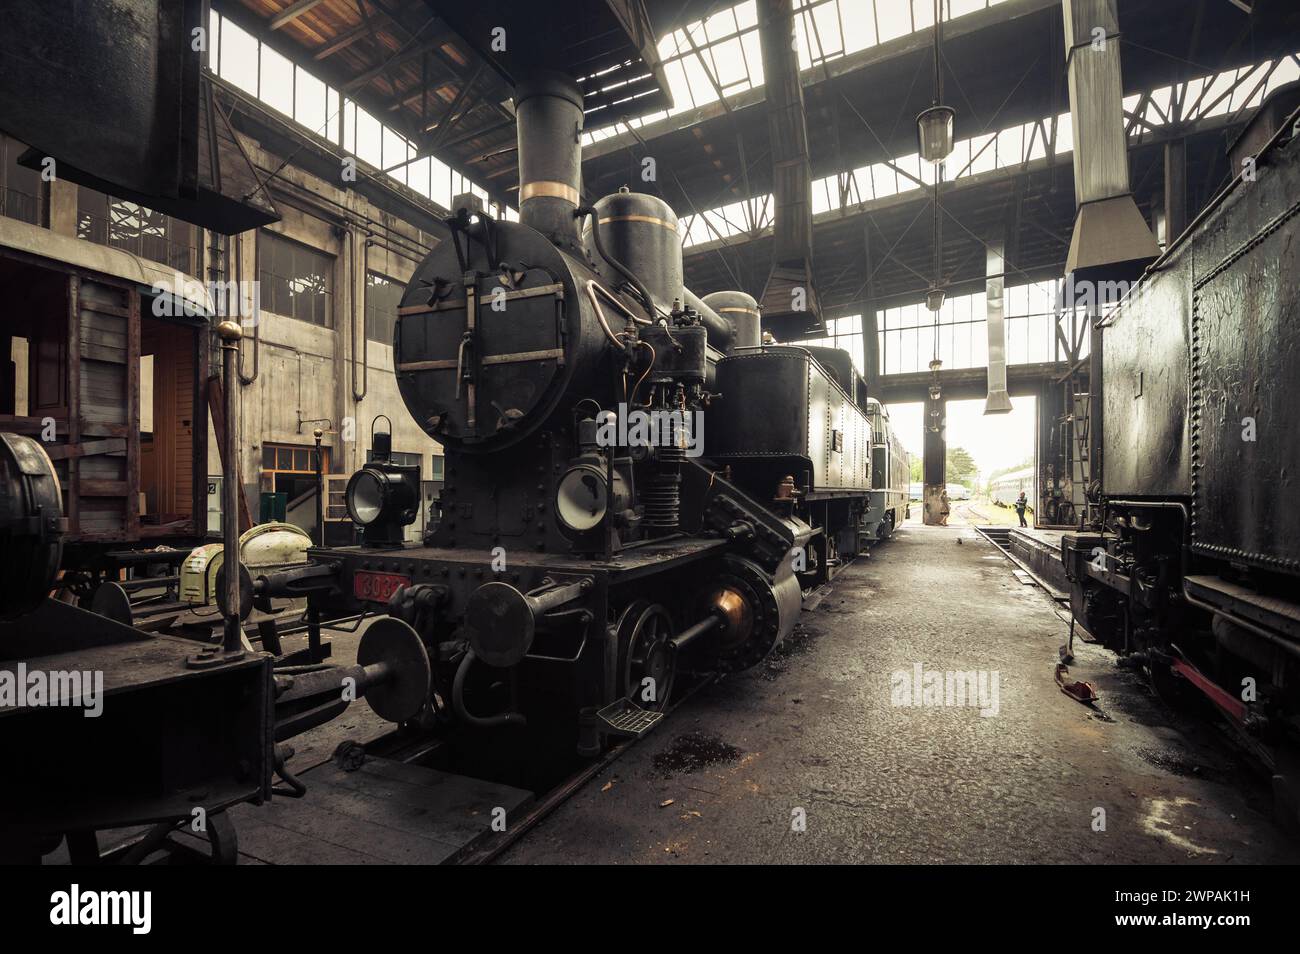 Alte Dampflokomotive kkStB 30 und andere Züge im Bahndepot. Die Luft im Bahnschuppen ist mit nebeligem Rauch gefüllt. Bild in warmen Brauntönen. Stockfoto